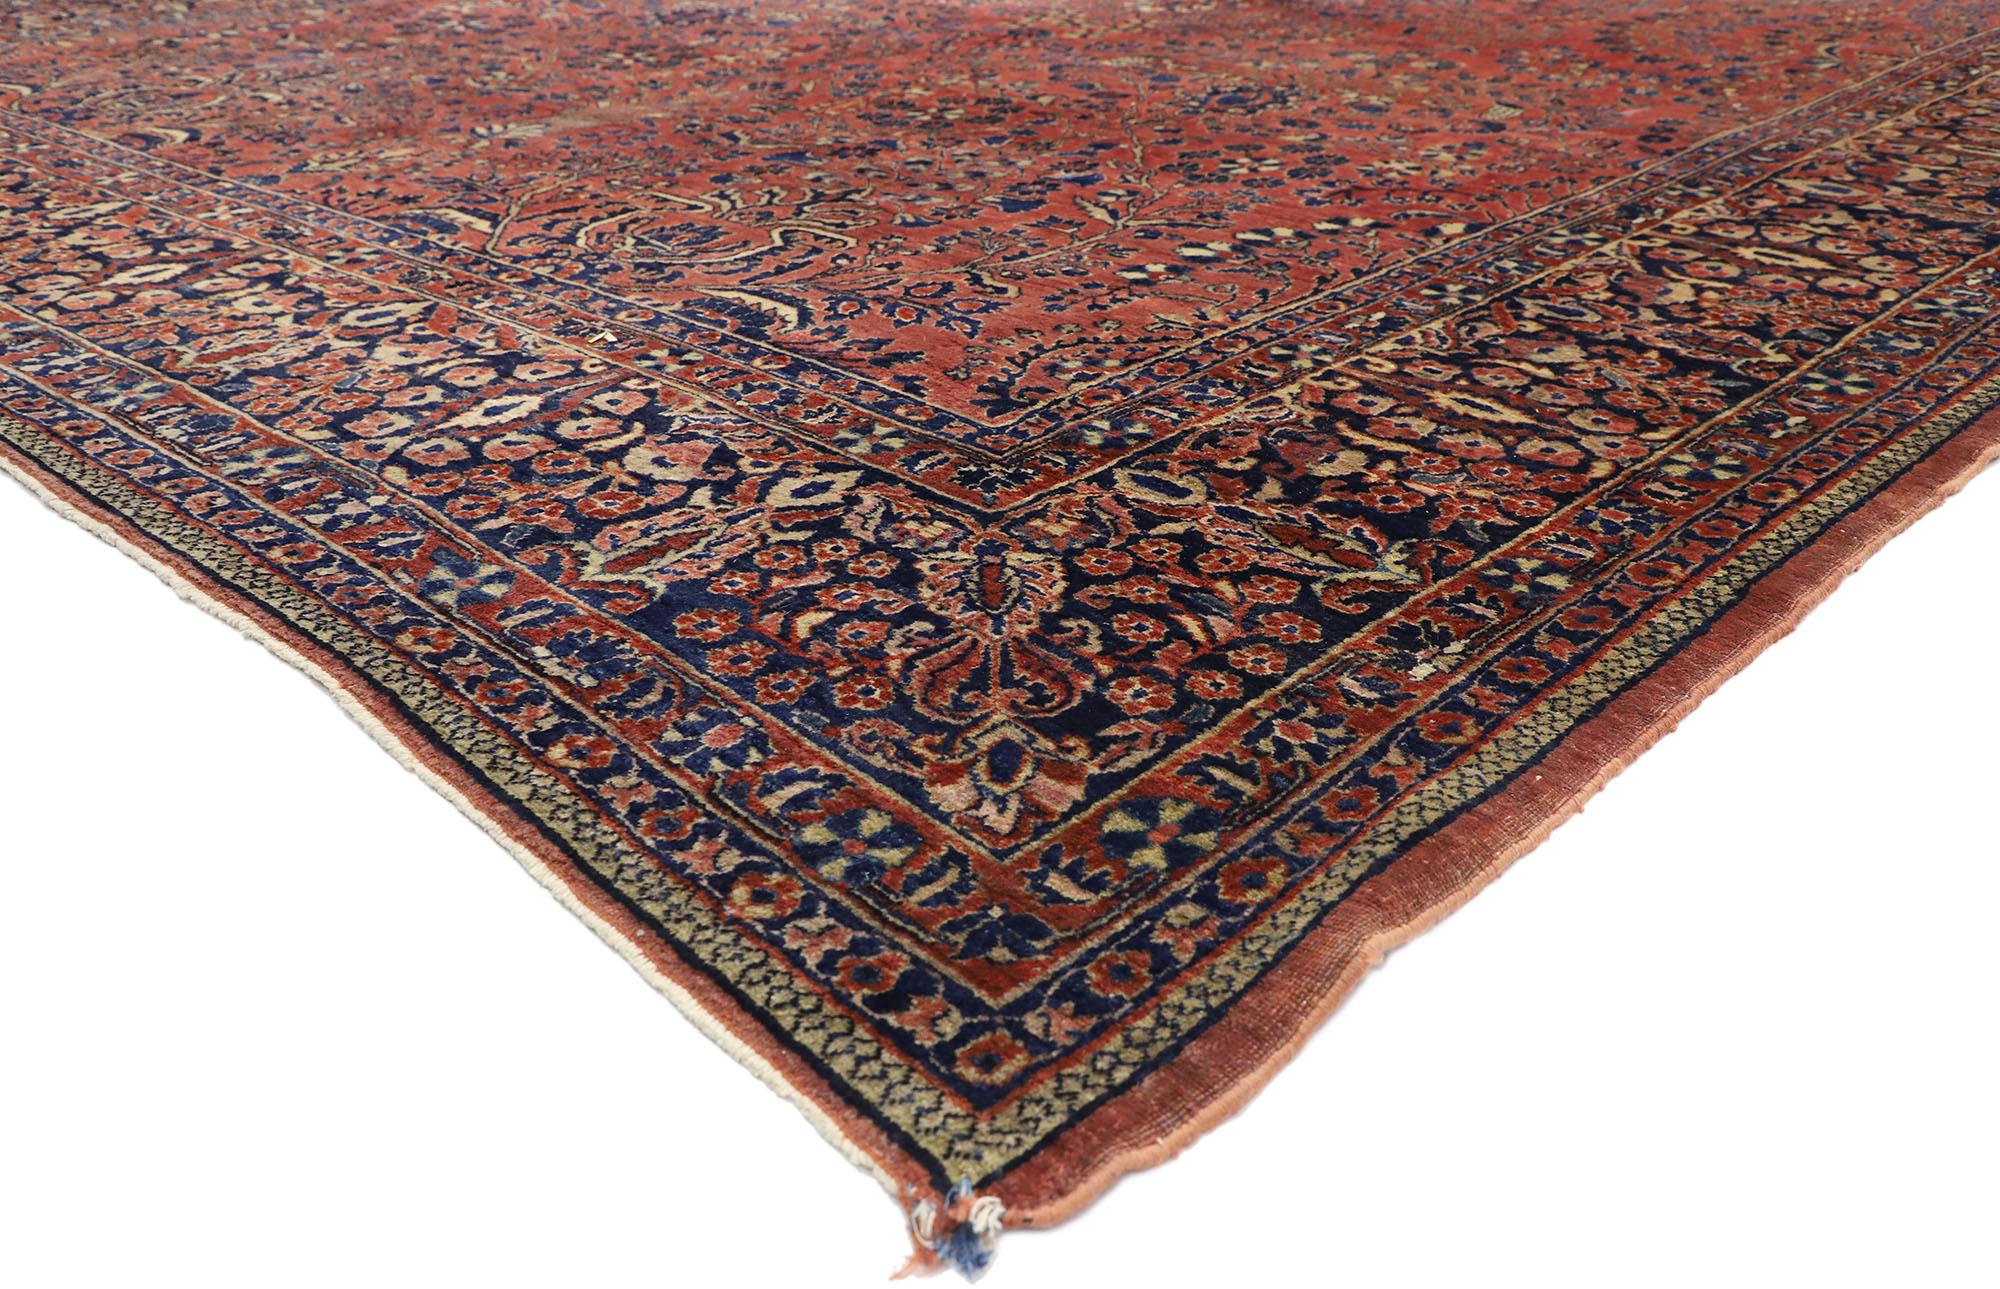 77381 Tapis sarouk persan ancien surdimensionné, 10'07 x 23'02. Les tapis sarouk persans surdimensionnés sont des tapis tissés à la main à grande échelle, originaires de la région de Sarouk en Iran. Ces tapis se caractérisent par leurs grandes